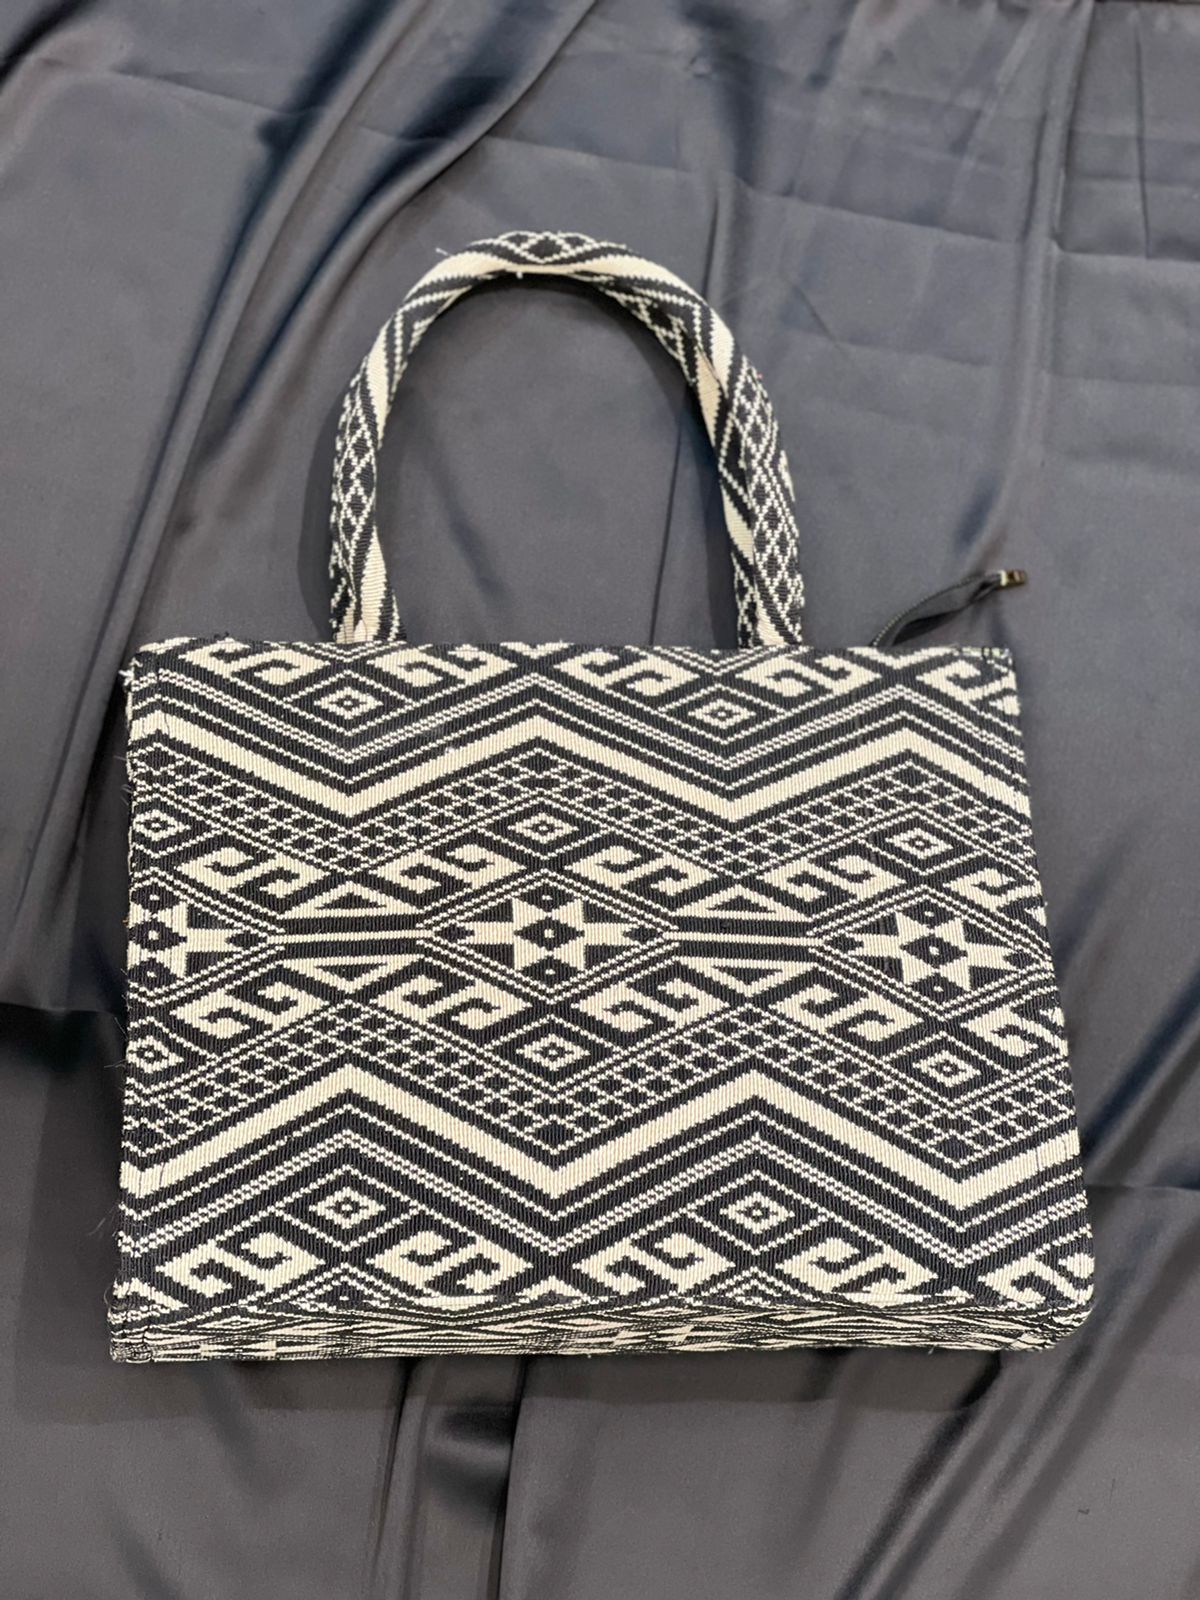 Tote Bag for Women |Extra Spacious| |Jute Bag| Large Multipurpose Shou –  TQS BAGS